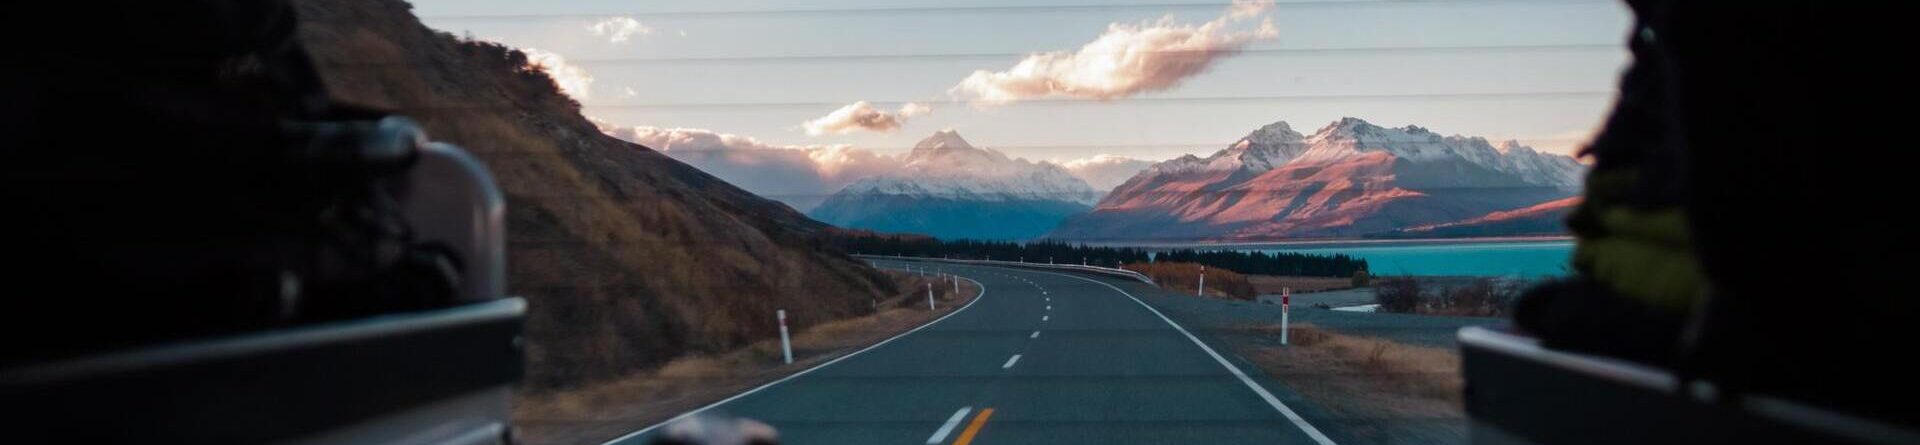 Получение водительских прав в Новой Зеландии